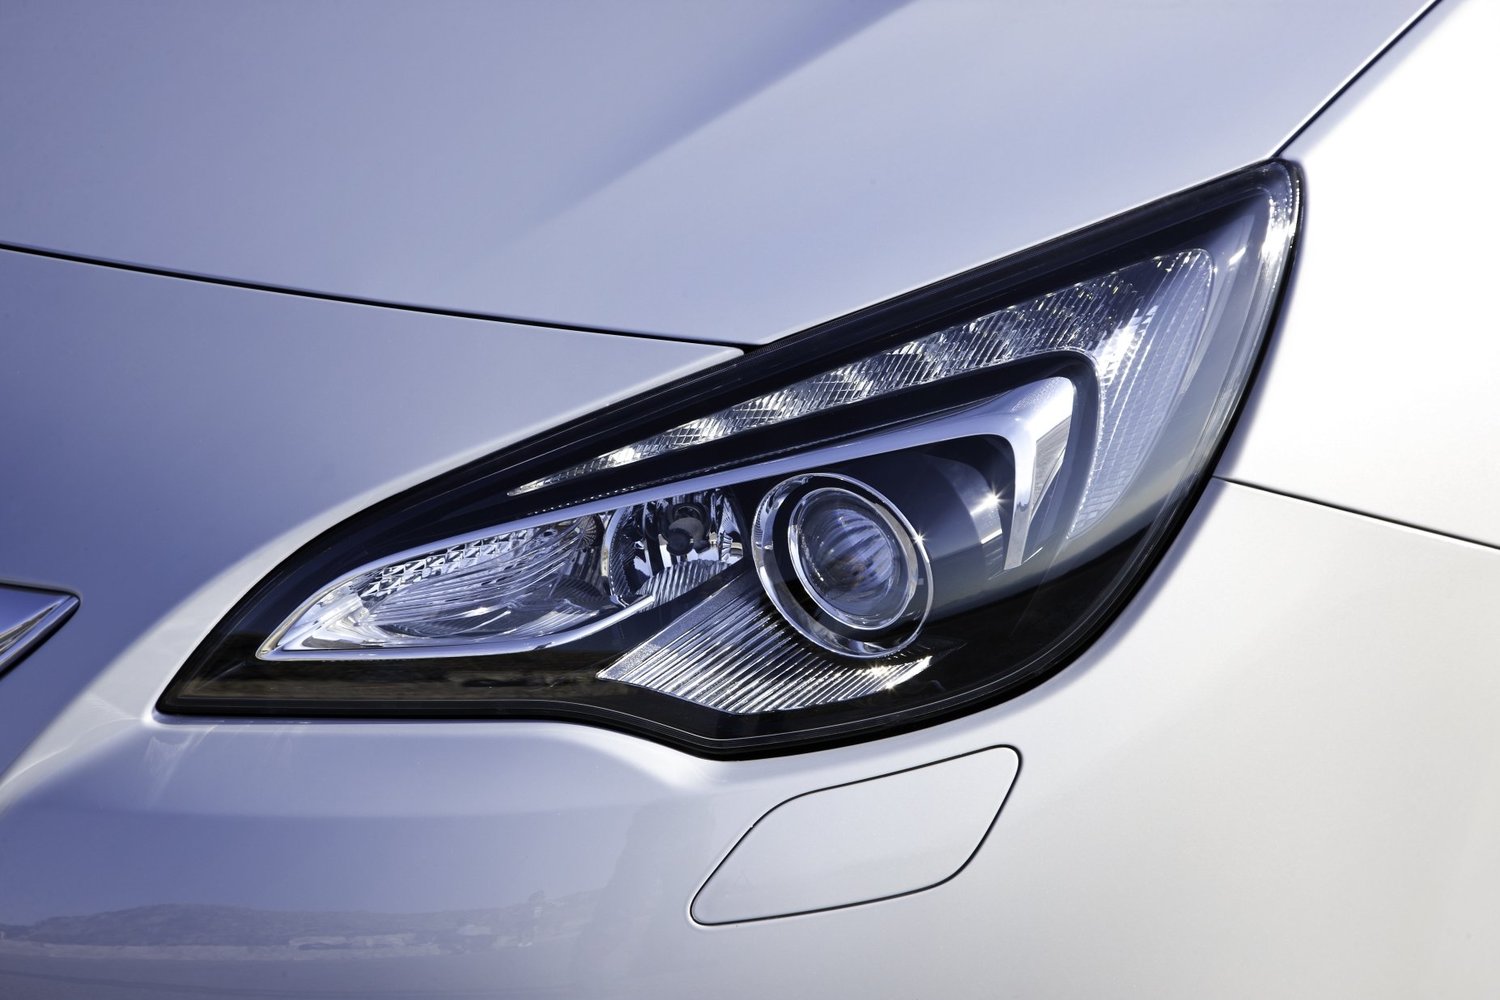 хэтчбек 3 дв. GTC Opel Astra 2012 - 2016г выпуска модификация 1.4 MT (100 л.с.)